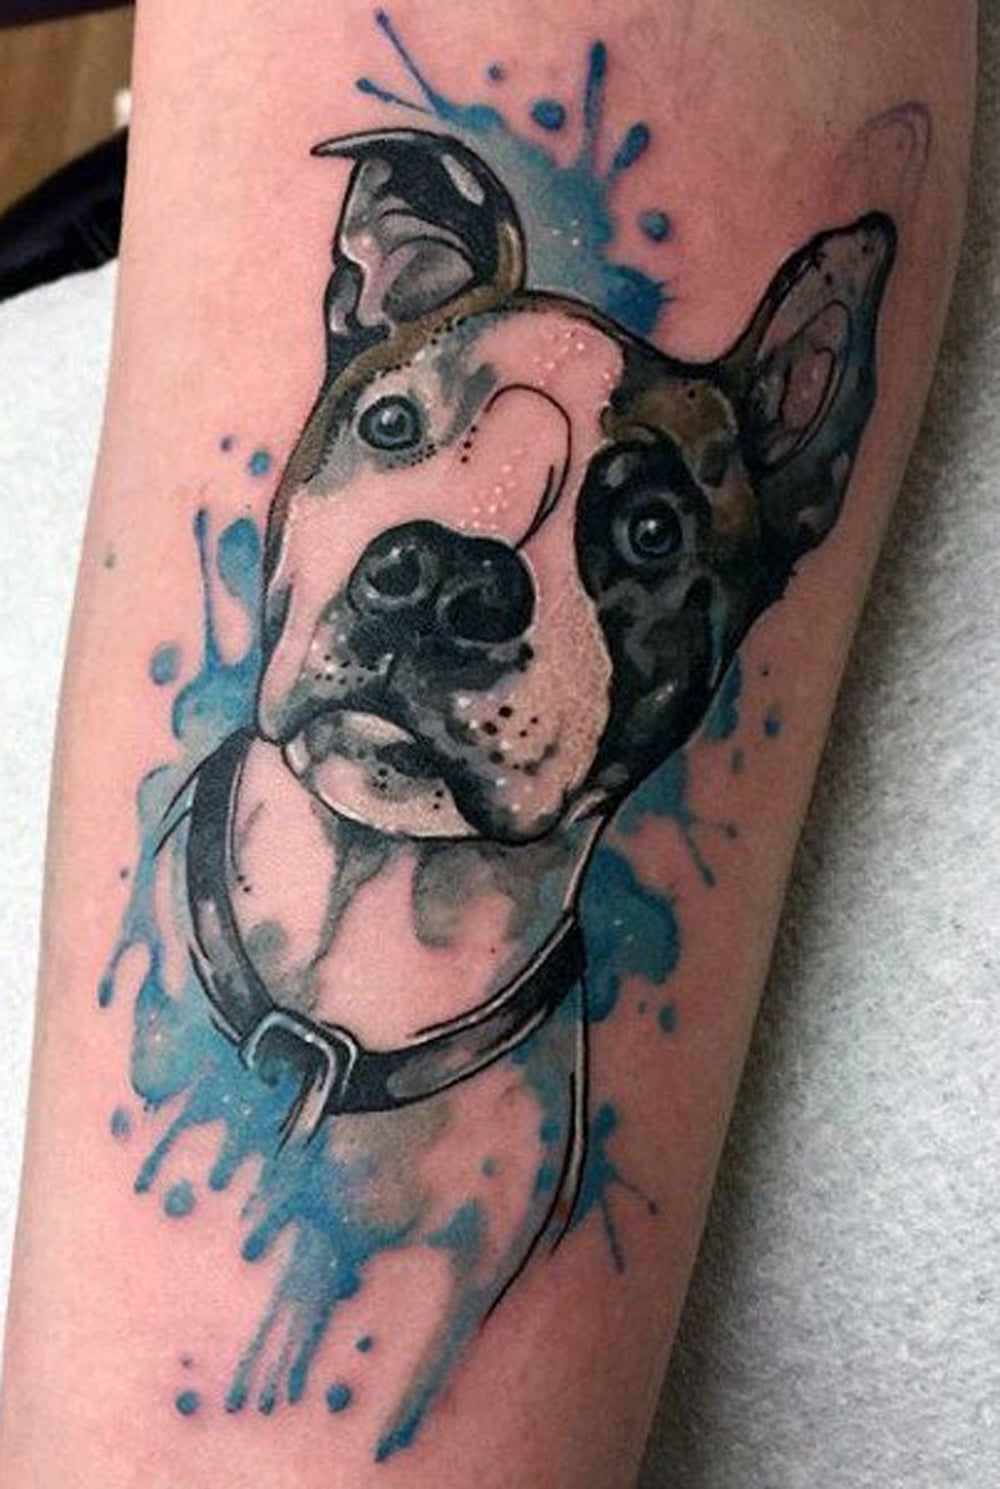 Watercolor Dalmatian Dog Calf Leg Tattoo Ideas for Women -  Ideas del tatuaje de la pierna de la pantorrilla del perro de la acuarela dálmata para las mujeres - www.MyBodiArt.com 